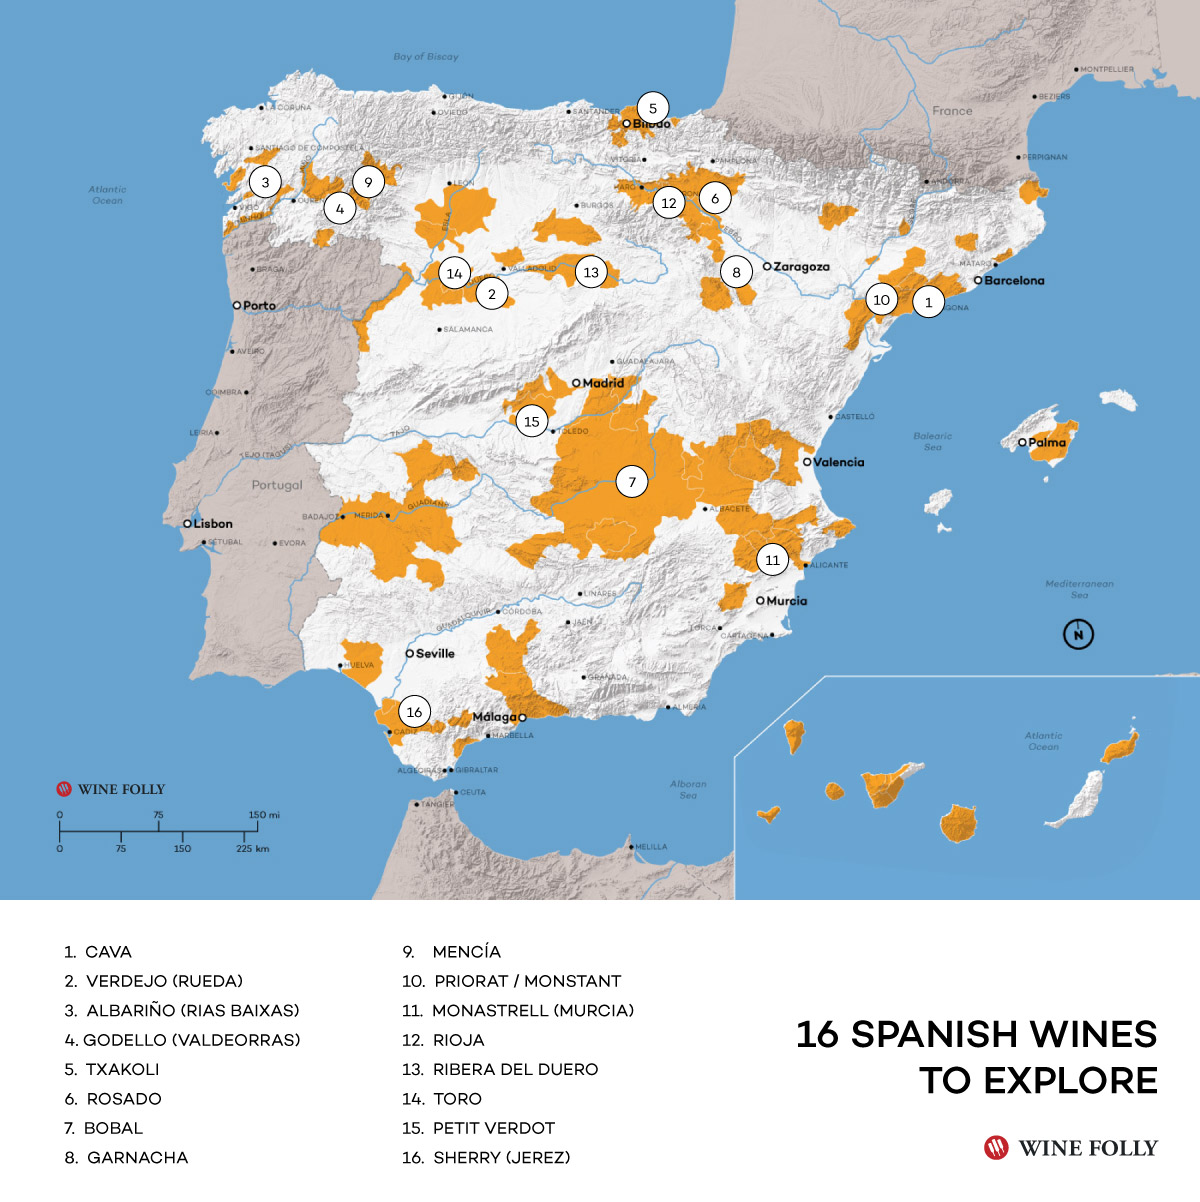 16 Vinos españoles a explorar según WineFolly